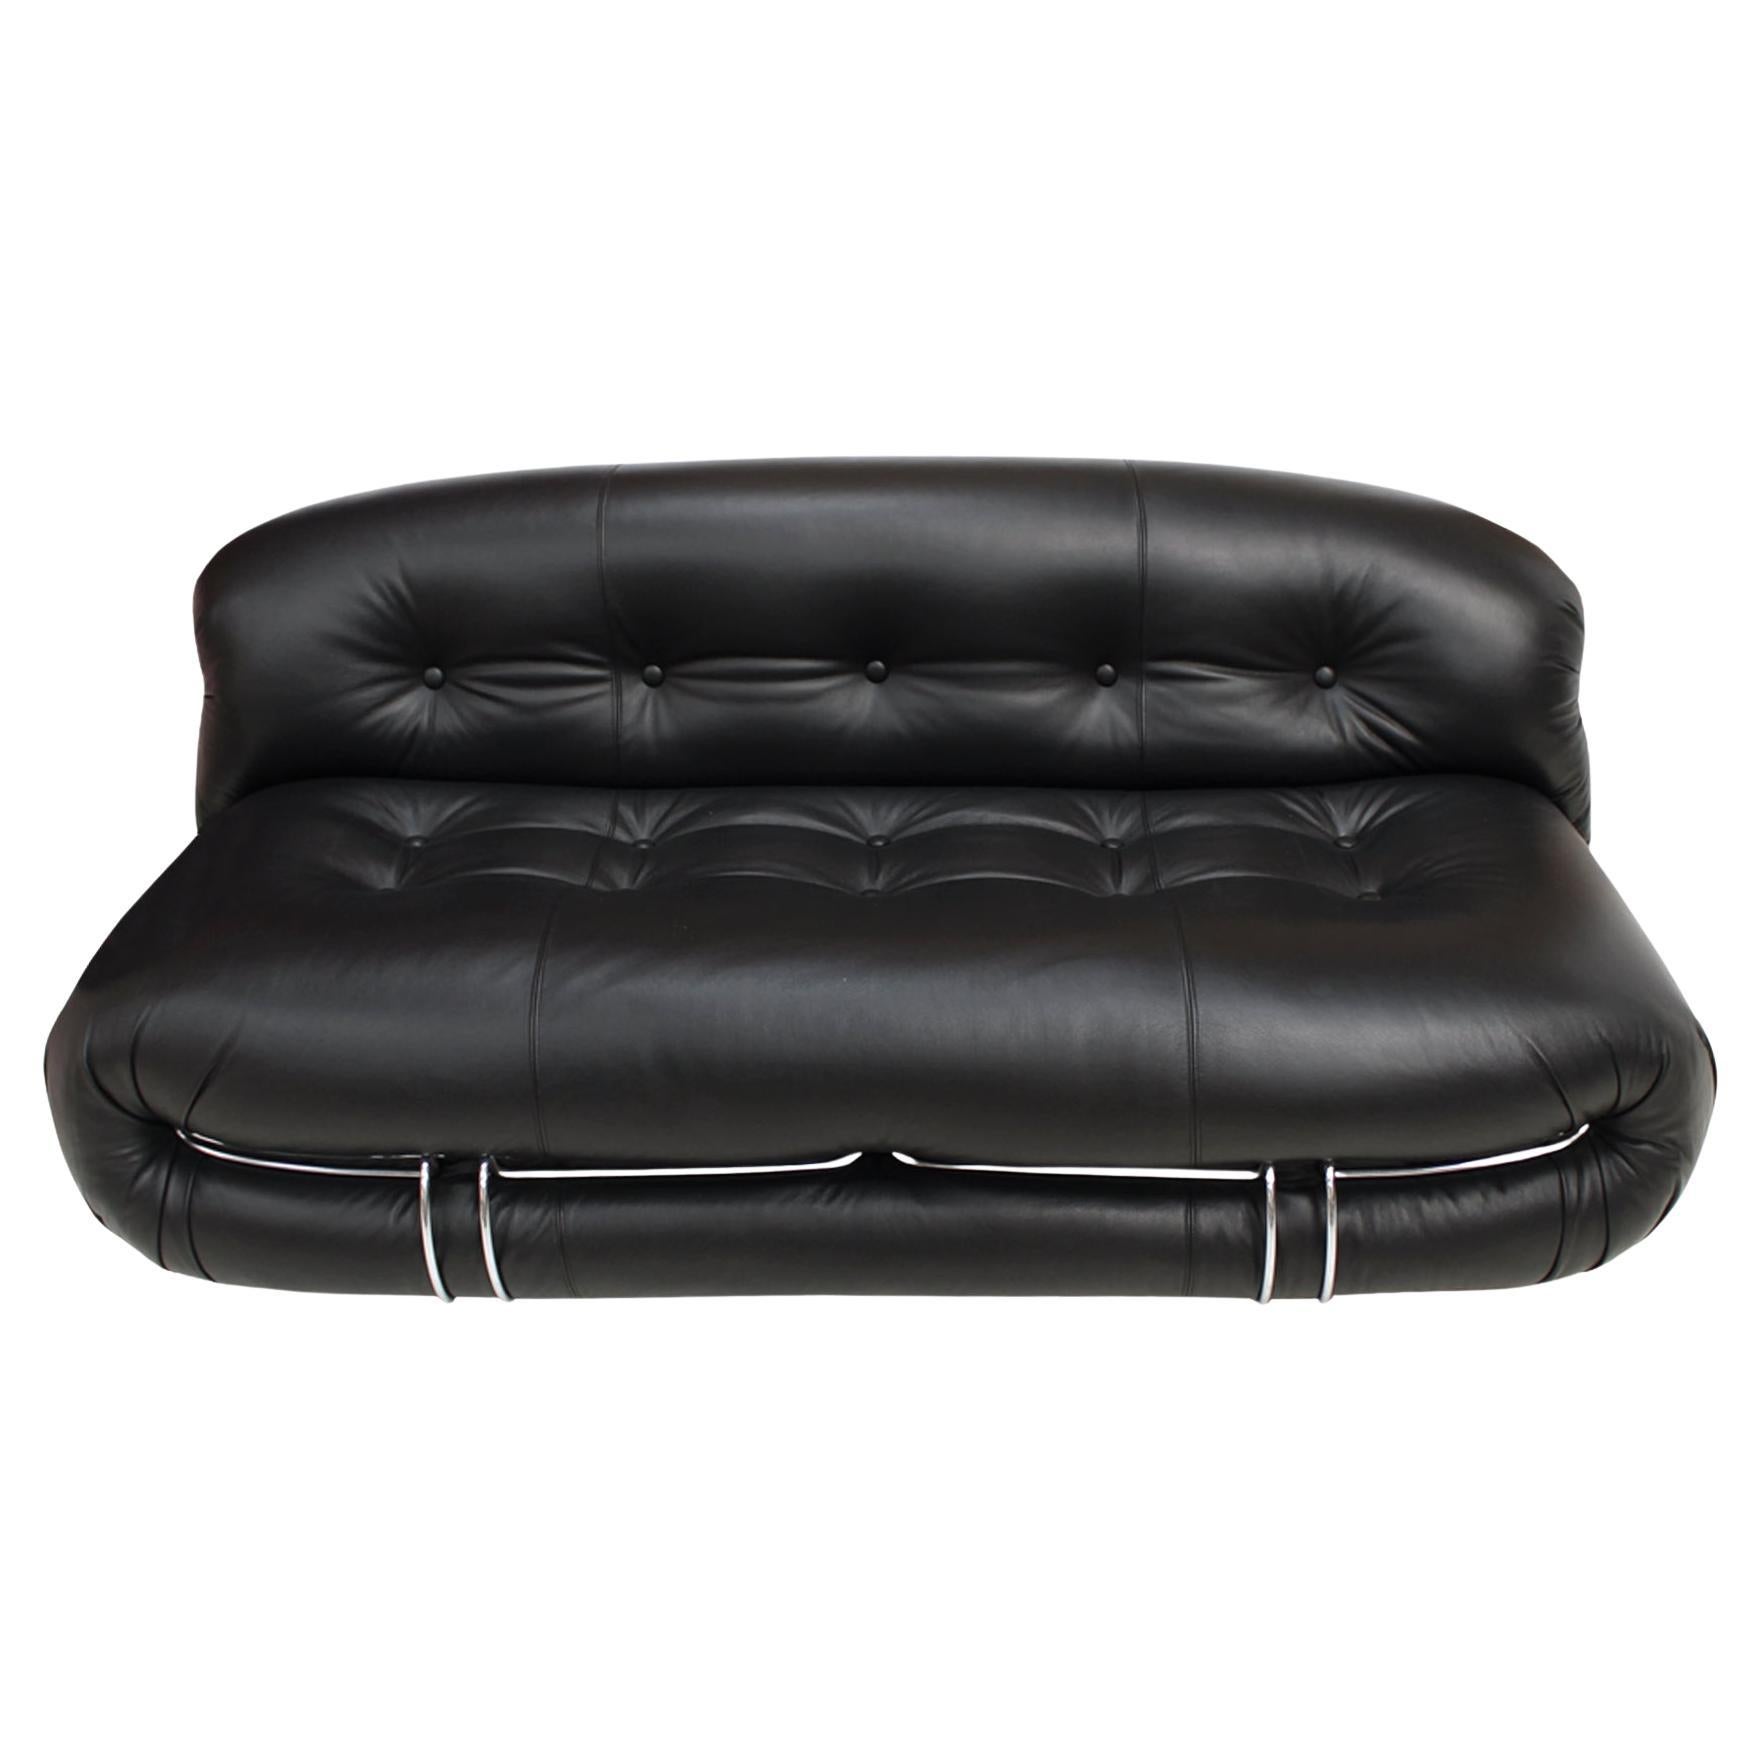 Mid-Century Modern Reupholstered Black Leather Soriana Italian Sofa Vintage